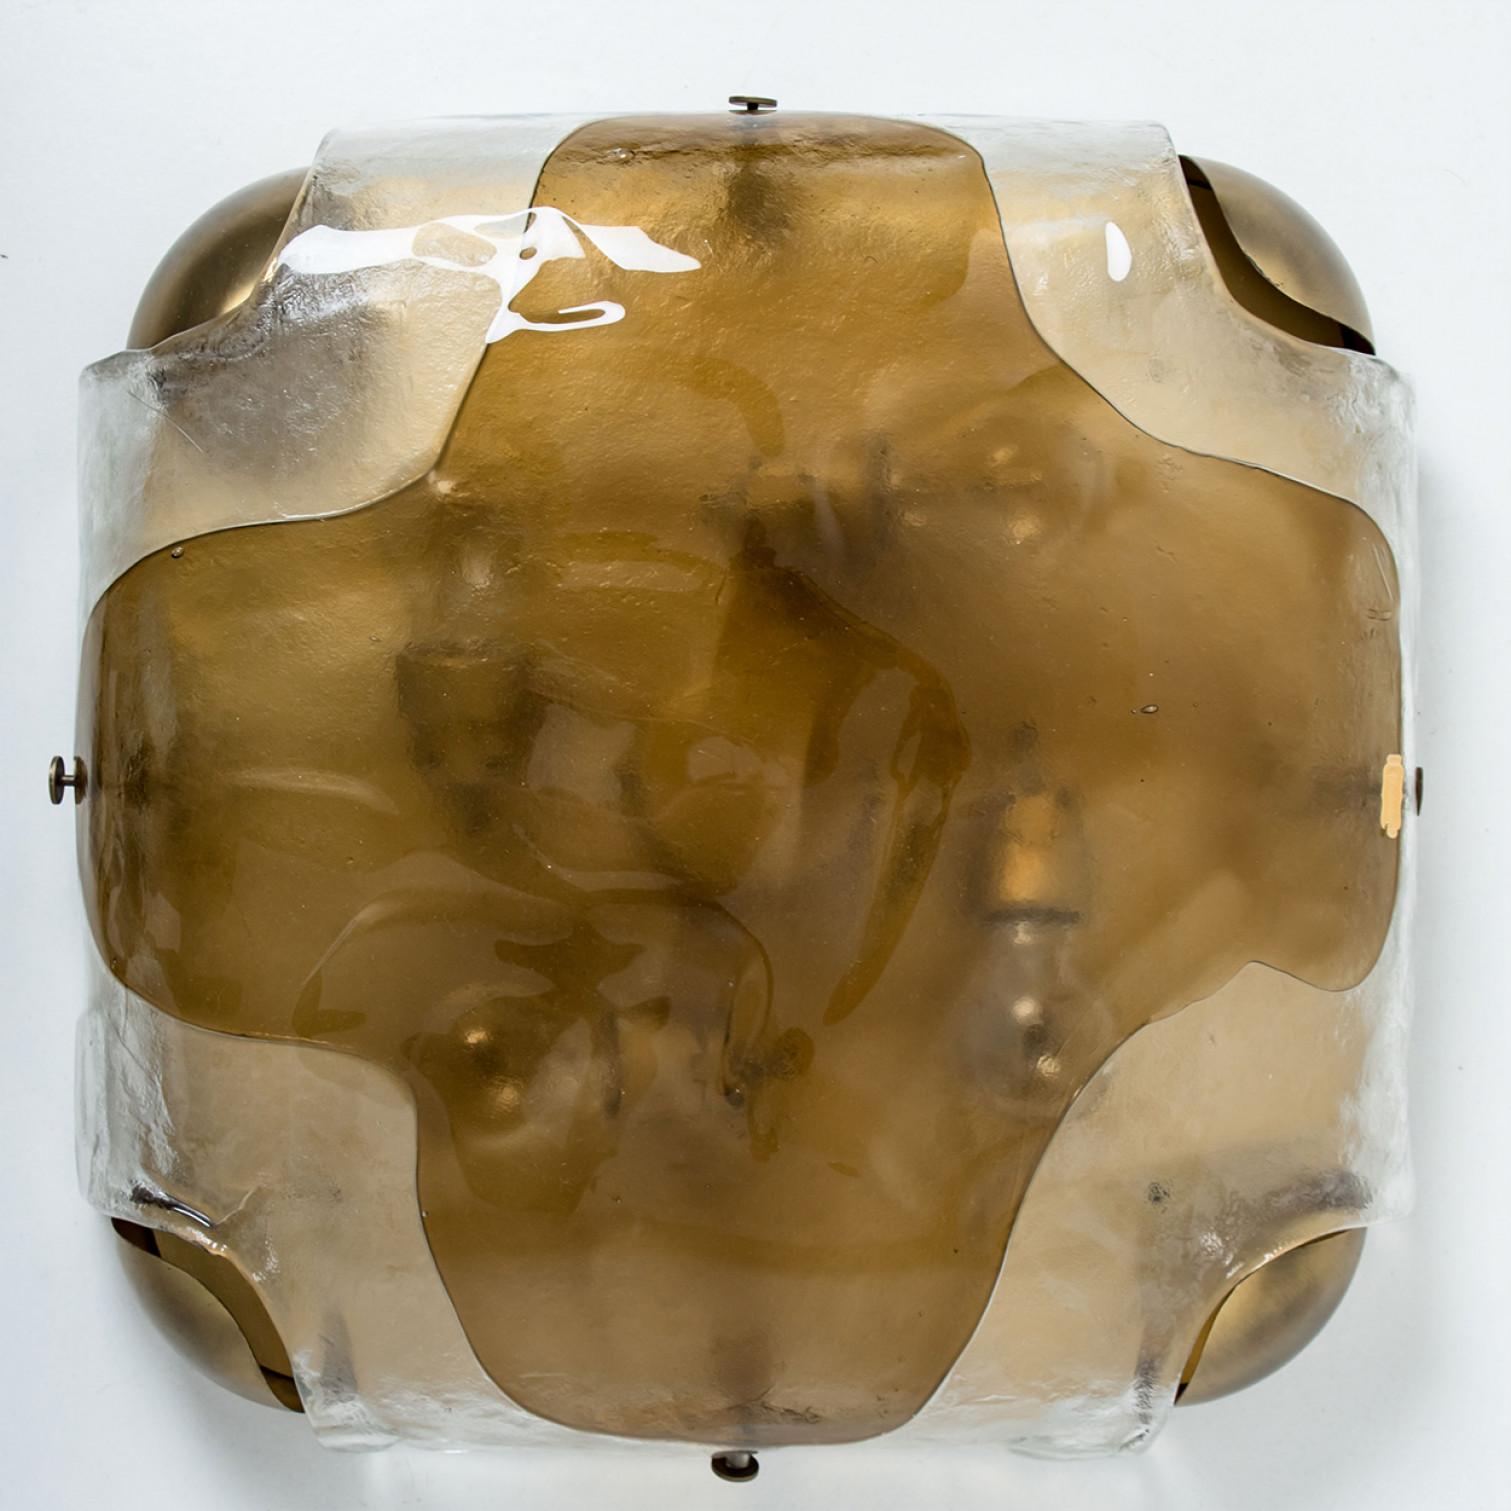 Wandleuchte aus Messing von J.T. Kalmar, Wien, Österreich, hergestellt ca. 1960. Das Glas weist eine Messingglasstruktur auf, die einen diffusen Lichteffekt und ein schönes Muster an Decke, Wänden und Boden erzeugt.
Die stilvolle Eleganz dieser